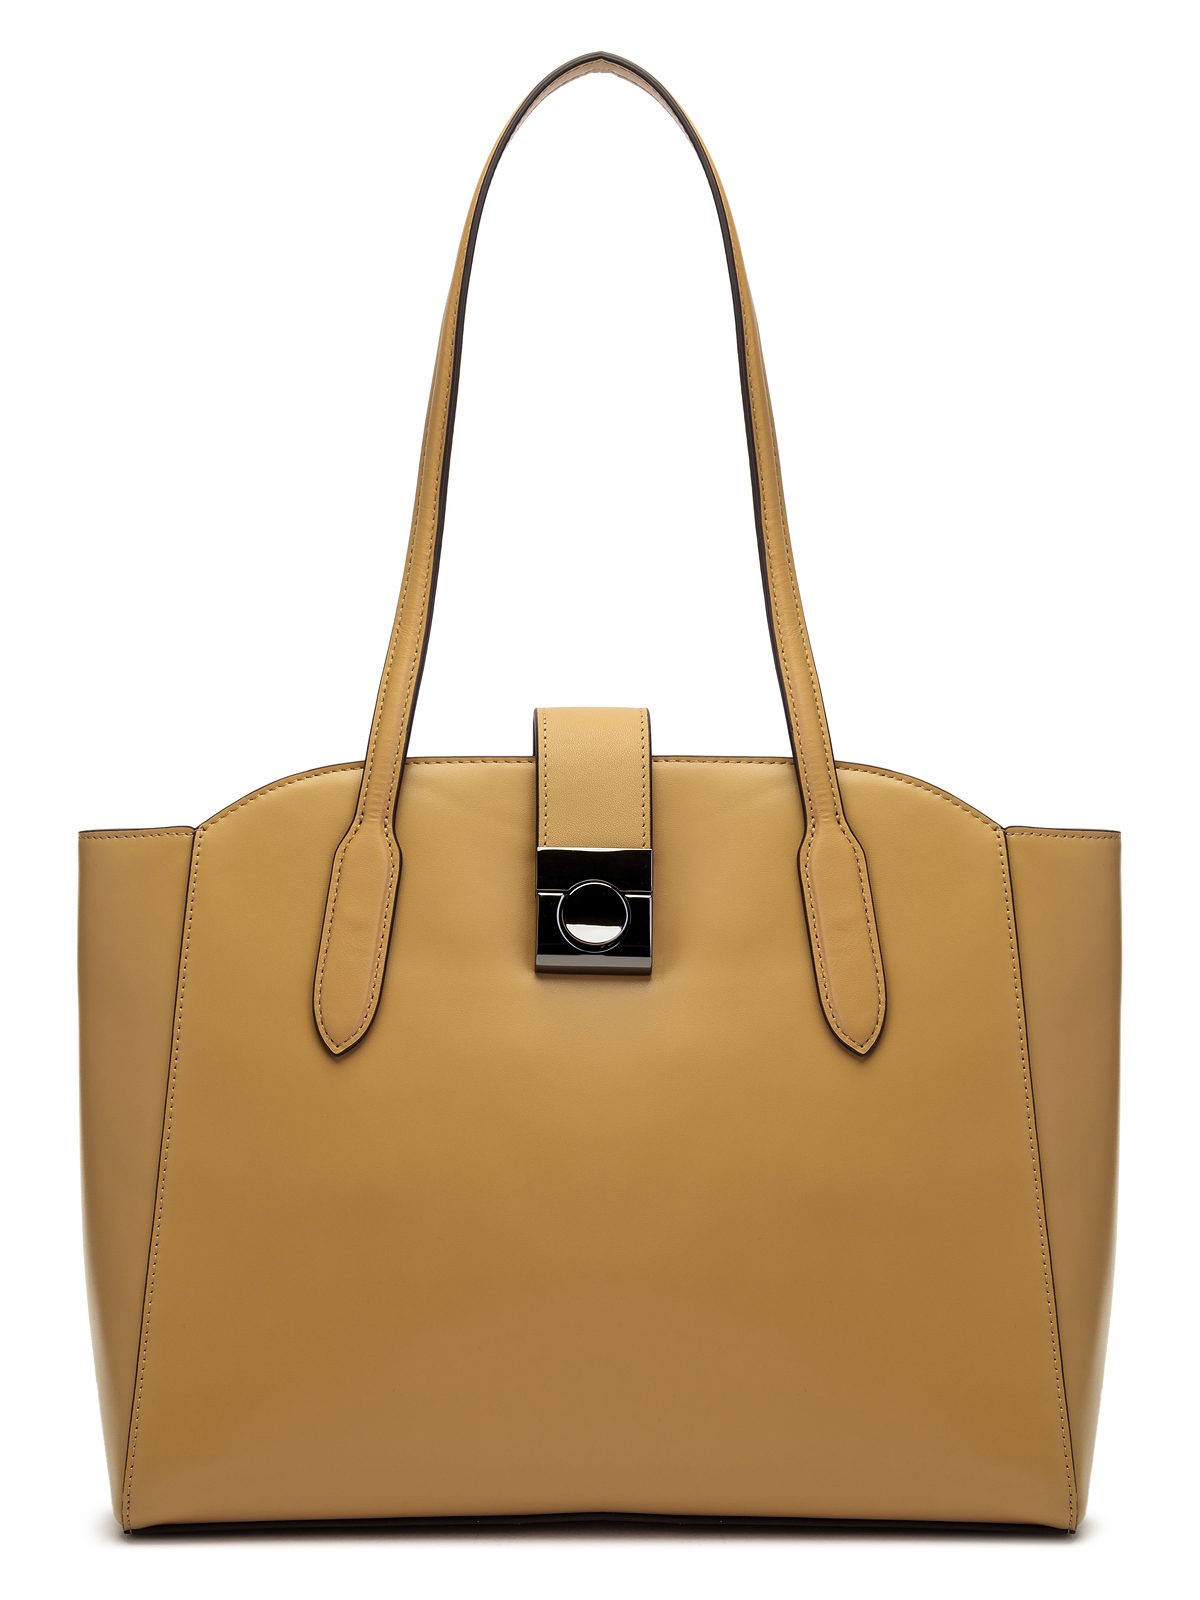 Женские сумки на плечо Palio : купить в Москве с доставкой, цены в интернет-магазине Gretta - страница 3